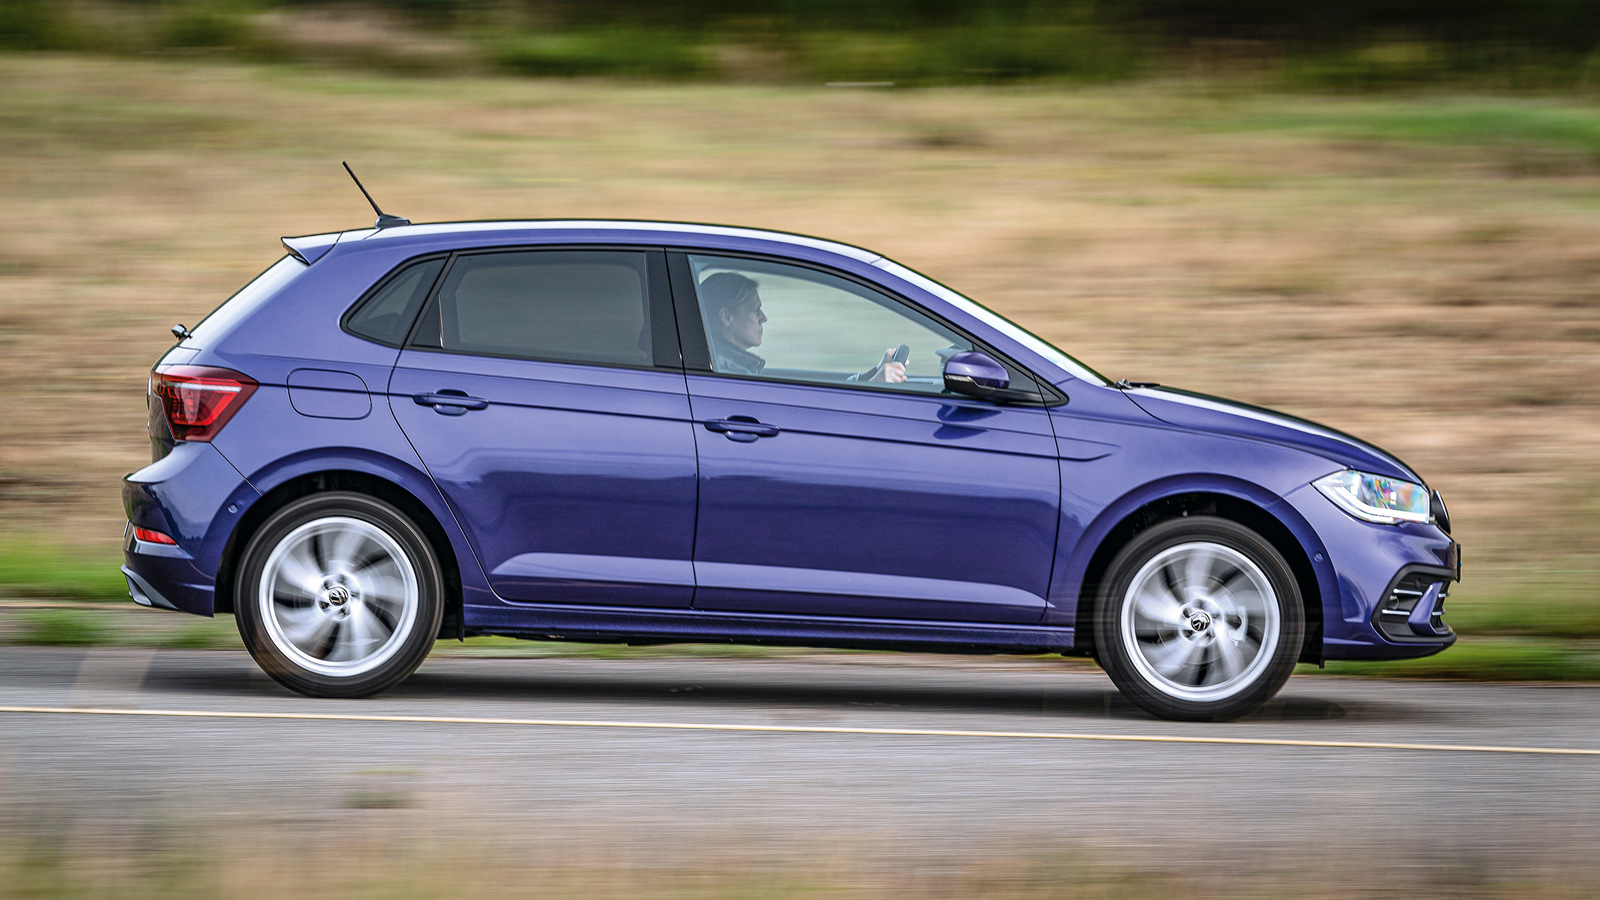 Το VW Polo είναι προσανατολισμένο στην άνεση, χωρίς όμως να υστερεί ιδιαίτερα σε συνθήκες πίεσης